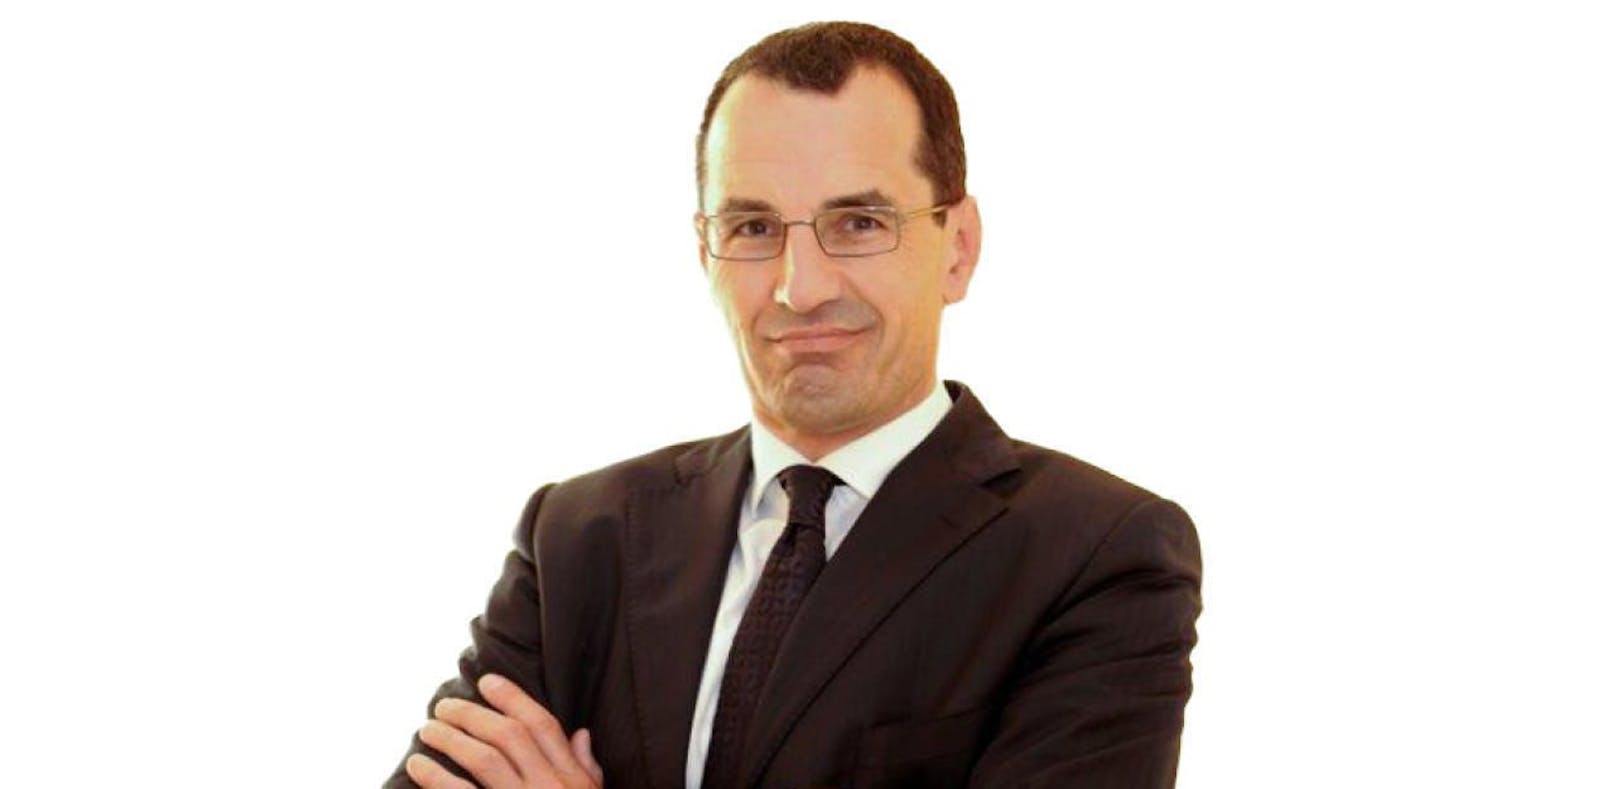 Michael Rami: Rennomierter Anwalt und Experte für Wirtschaftsrecht